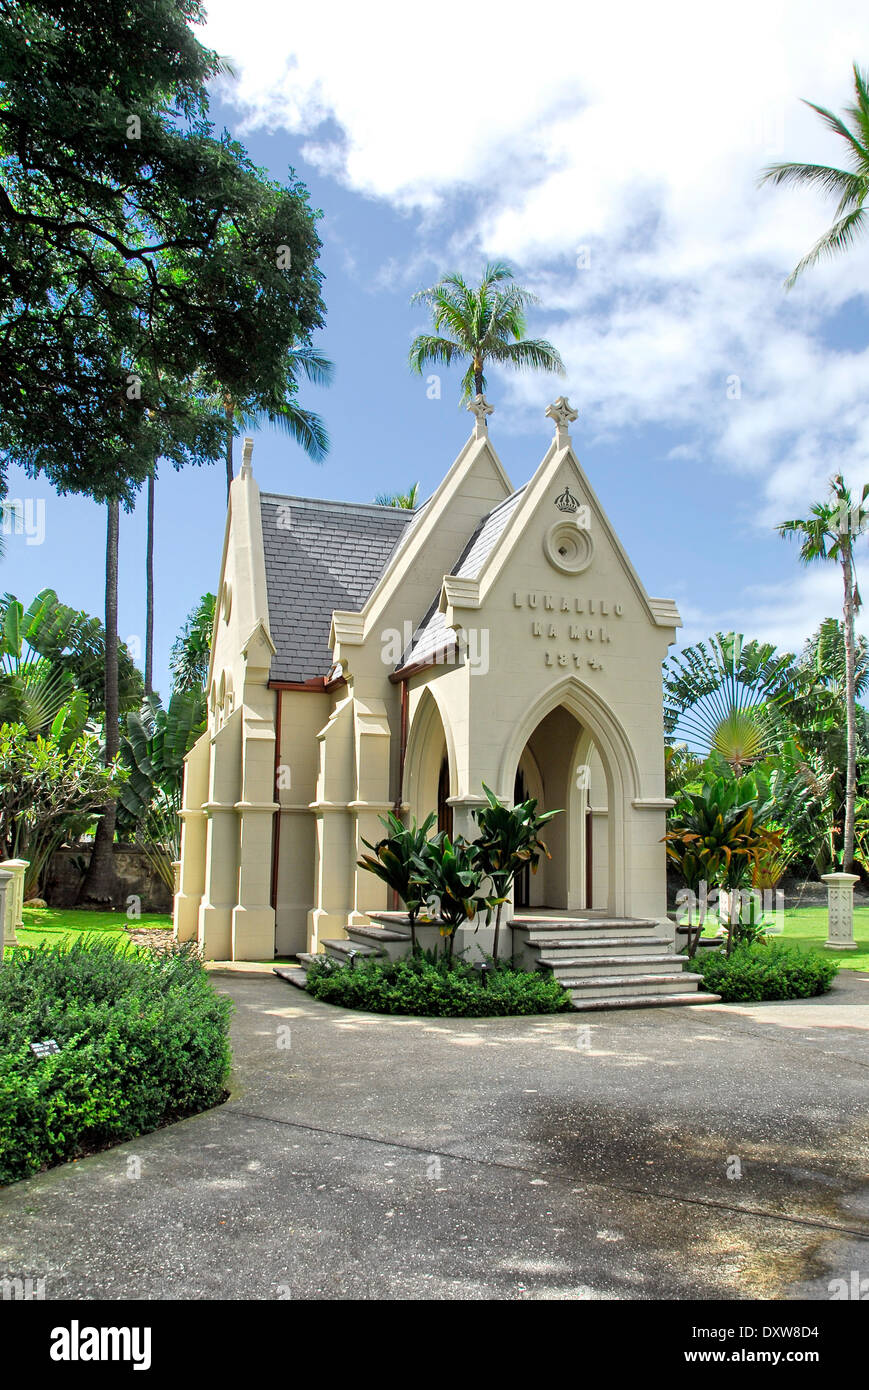 Le Mausaleum Lunalilo Ka moi dans l'Église Kawaiahao l - L'église de pierre à Honolulu, l'île d'Oahu, dans l'état de New York Banque D'Images